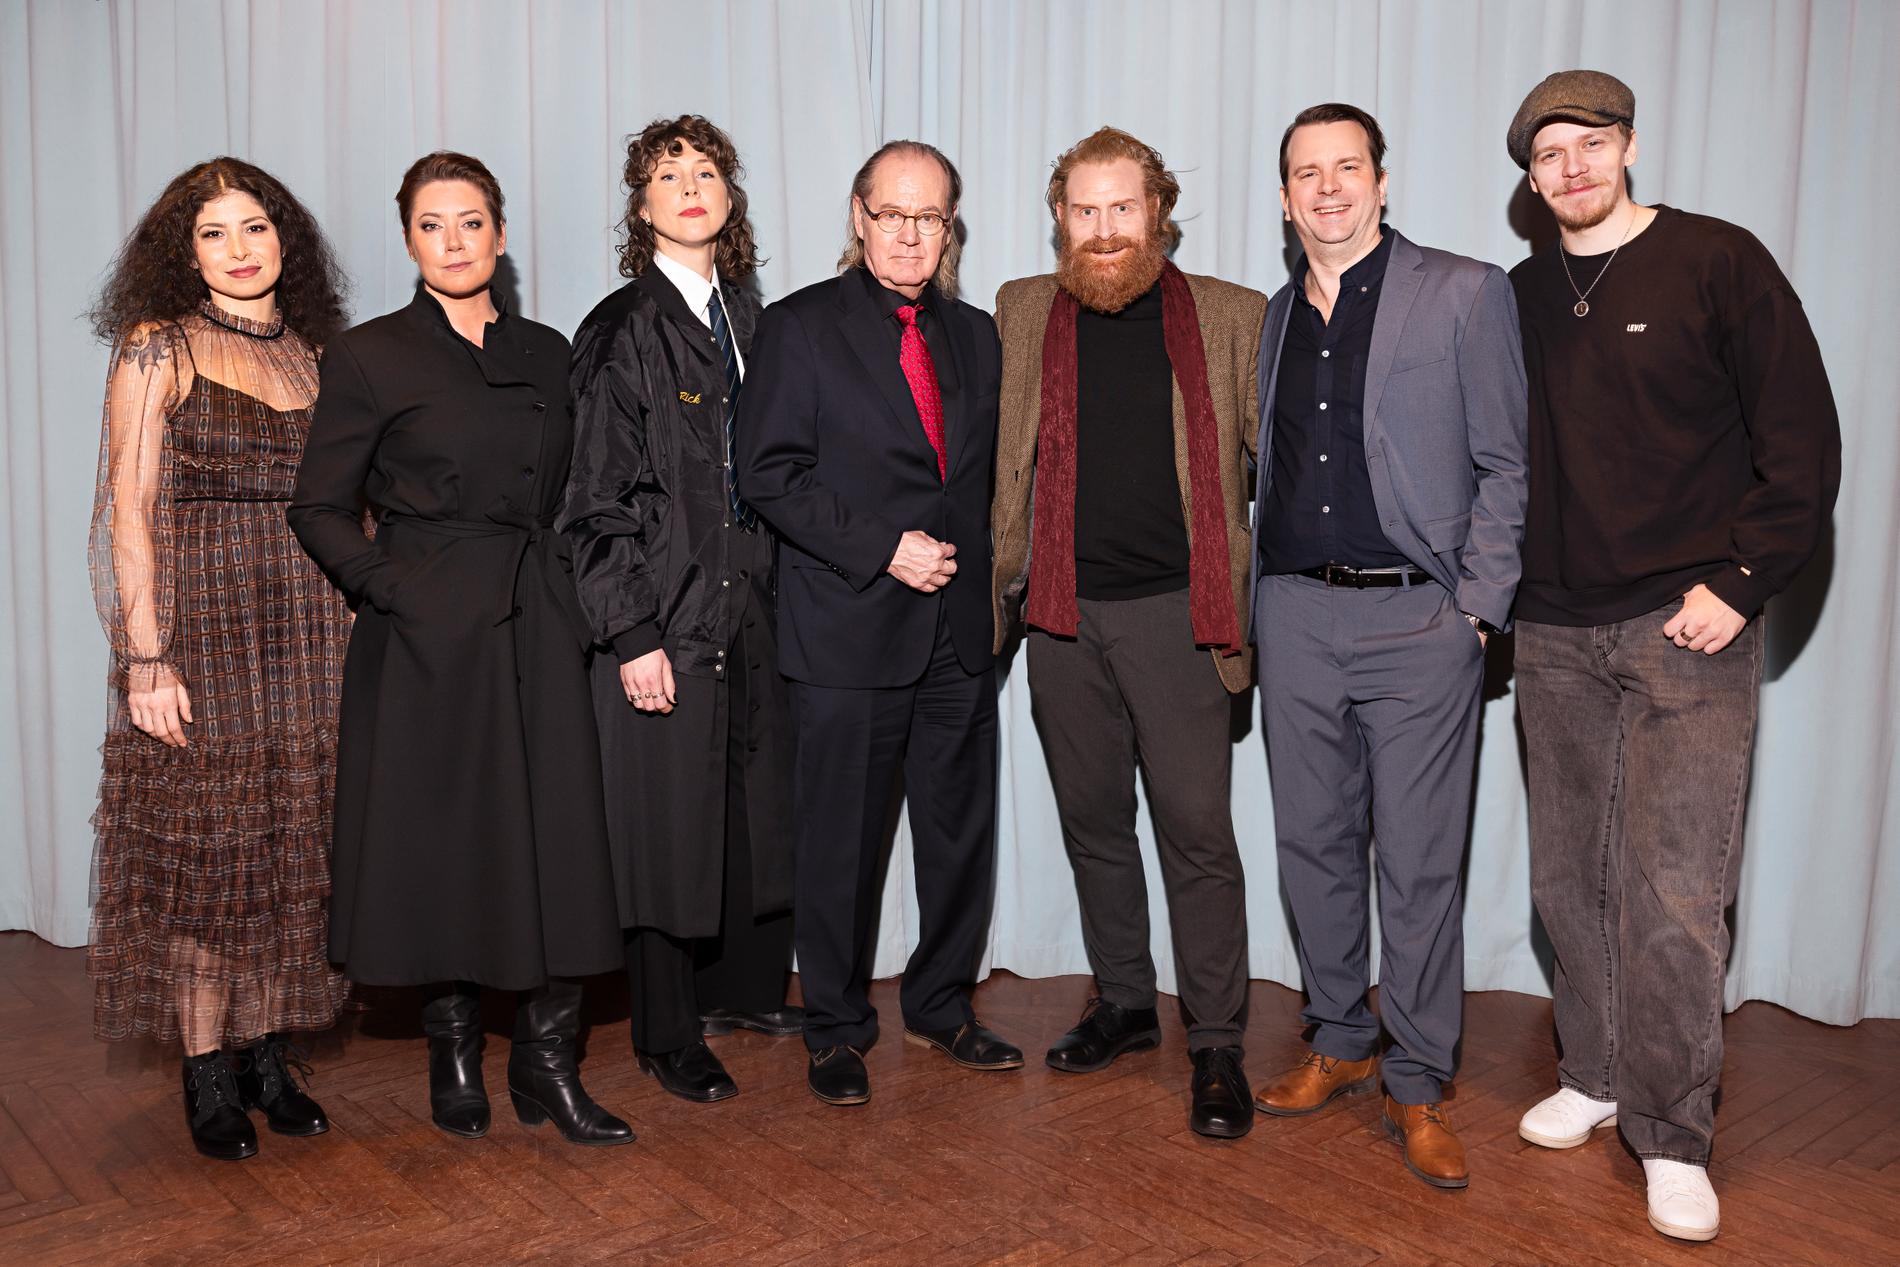 Med kollegorna i ”Beck”. Från vänster: Elmira Arikan, Jennie Silfverhjelm, Anna Asp, Peter Haber, Kristofer Hivju, Måns Nathanaelson och Valter Skarsgård.